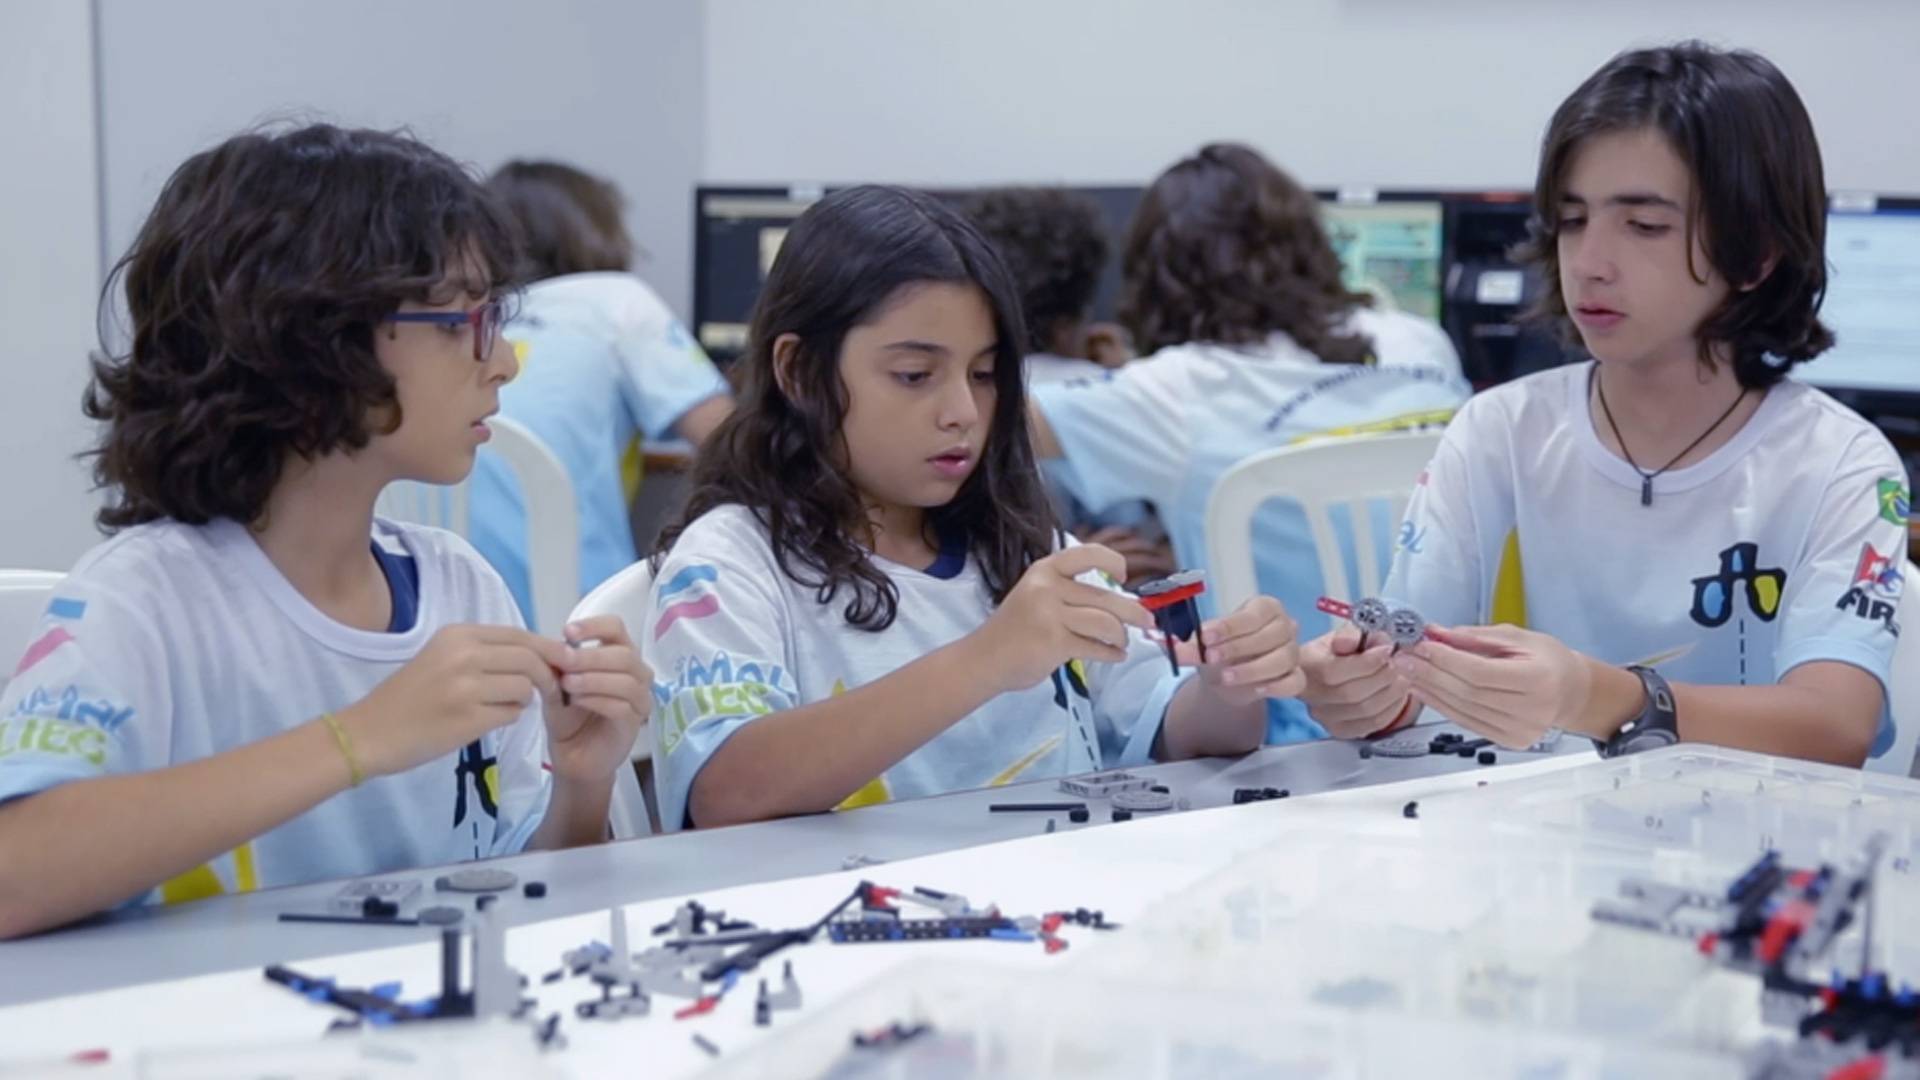 VÍDEO: Robótica desperta habilidades e competências nos estudantes